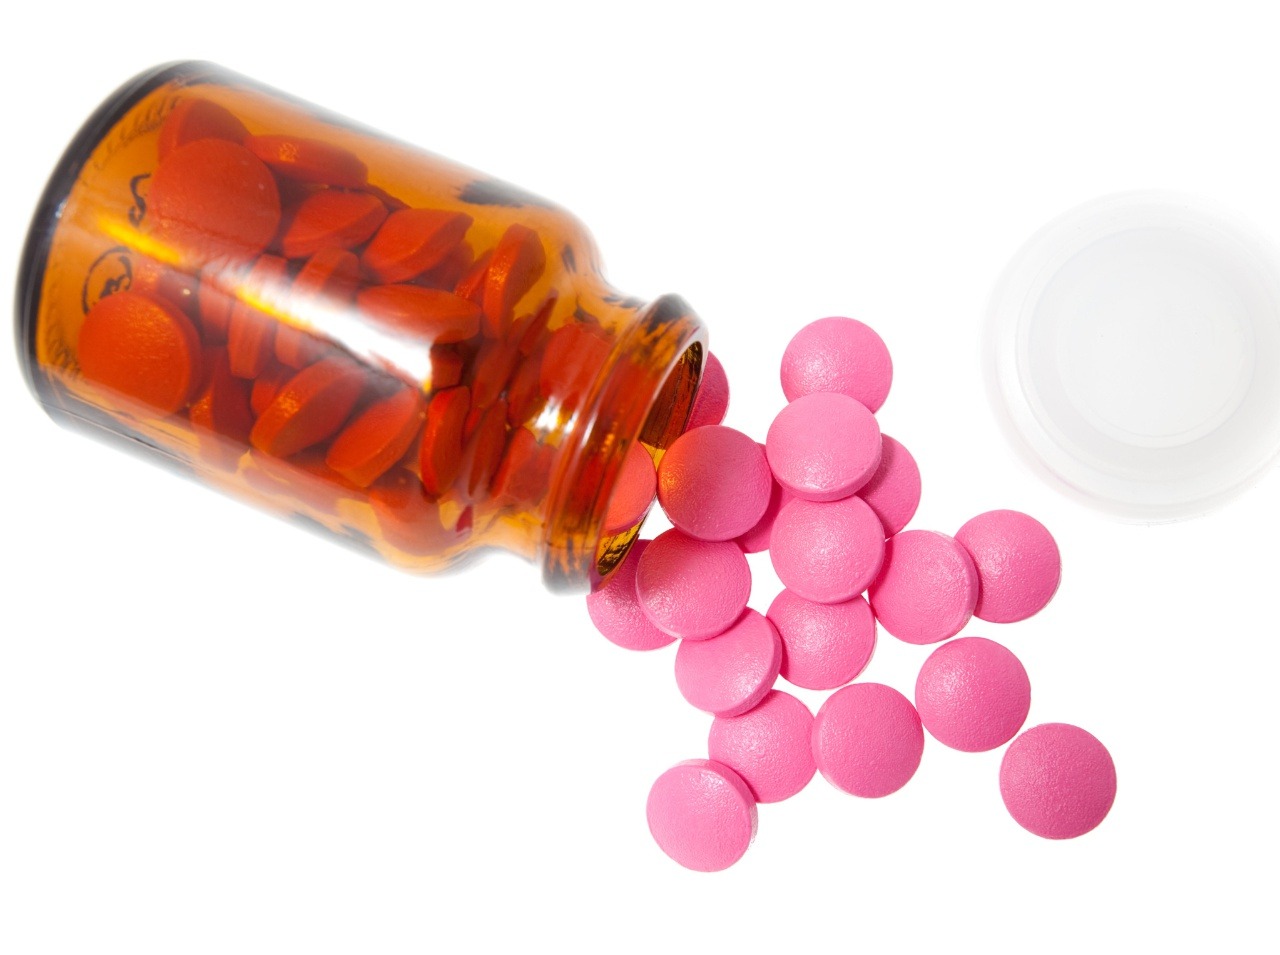 Ibuprofen je spoľahlivým liekom proti bolesti, no u niektorých môže vyvolať nebezpečnú infekciu.